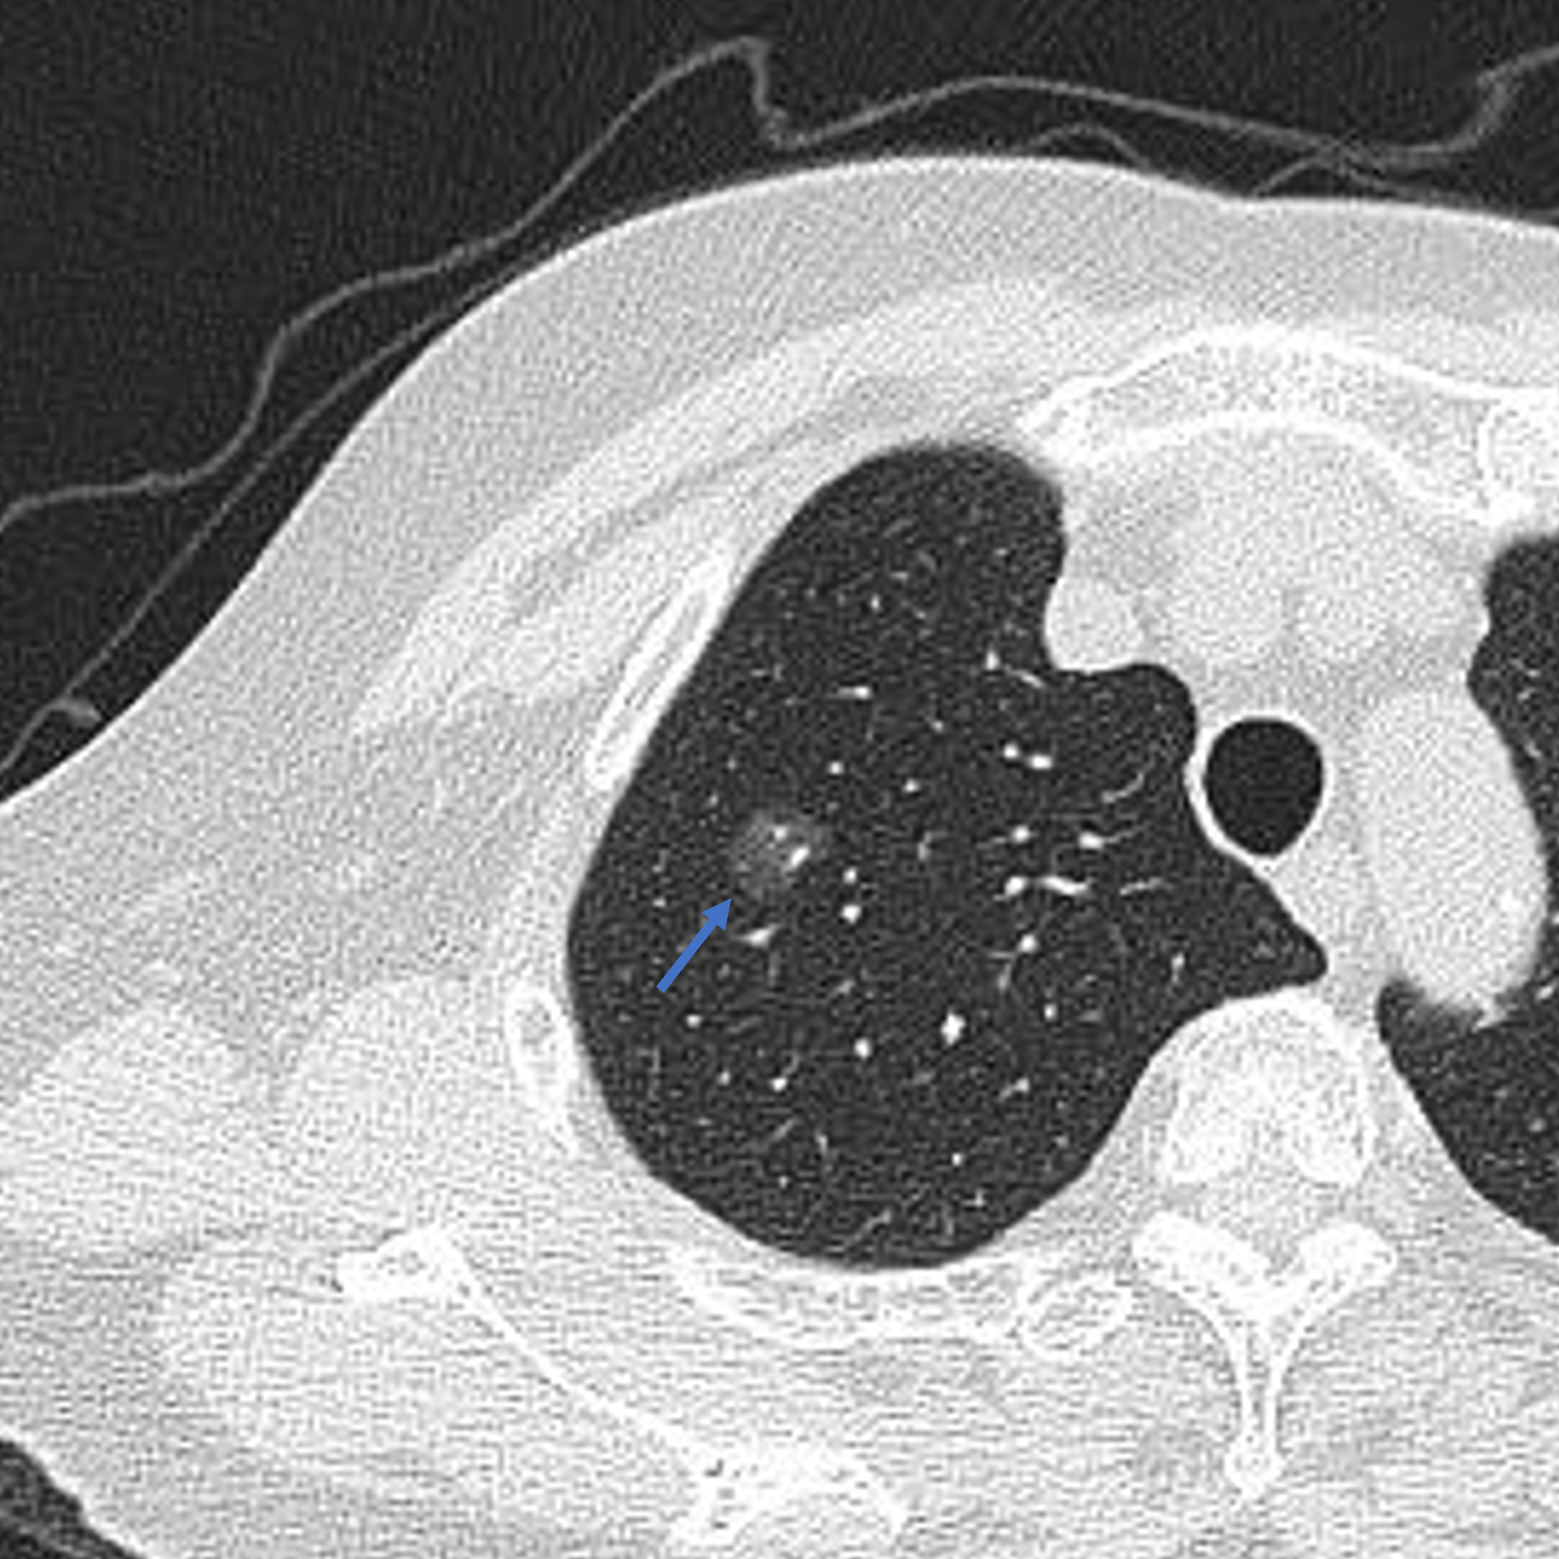 近期有两位乳腺癌的患者,在胸部ct扫描时发现了肺内多发磨玻璃结节,第